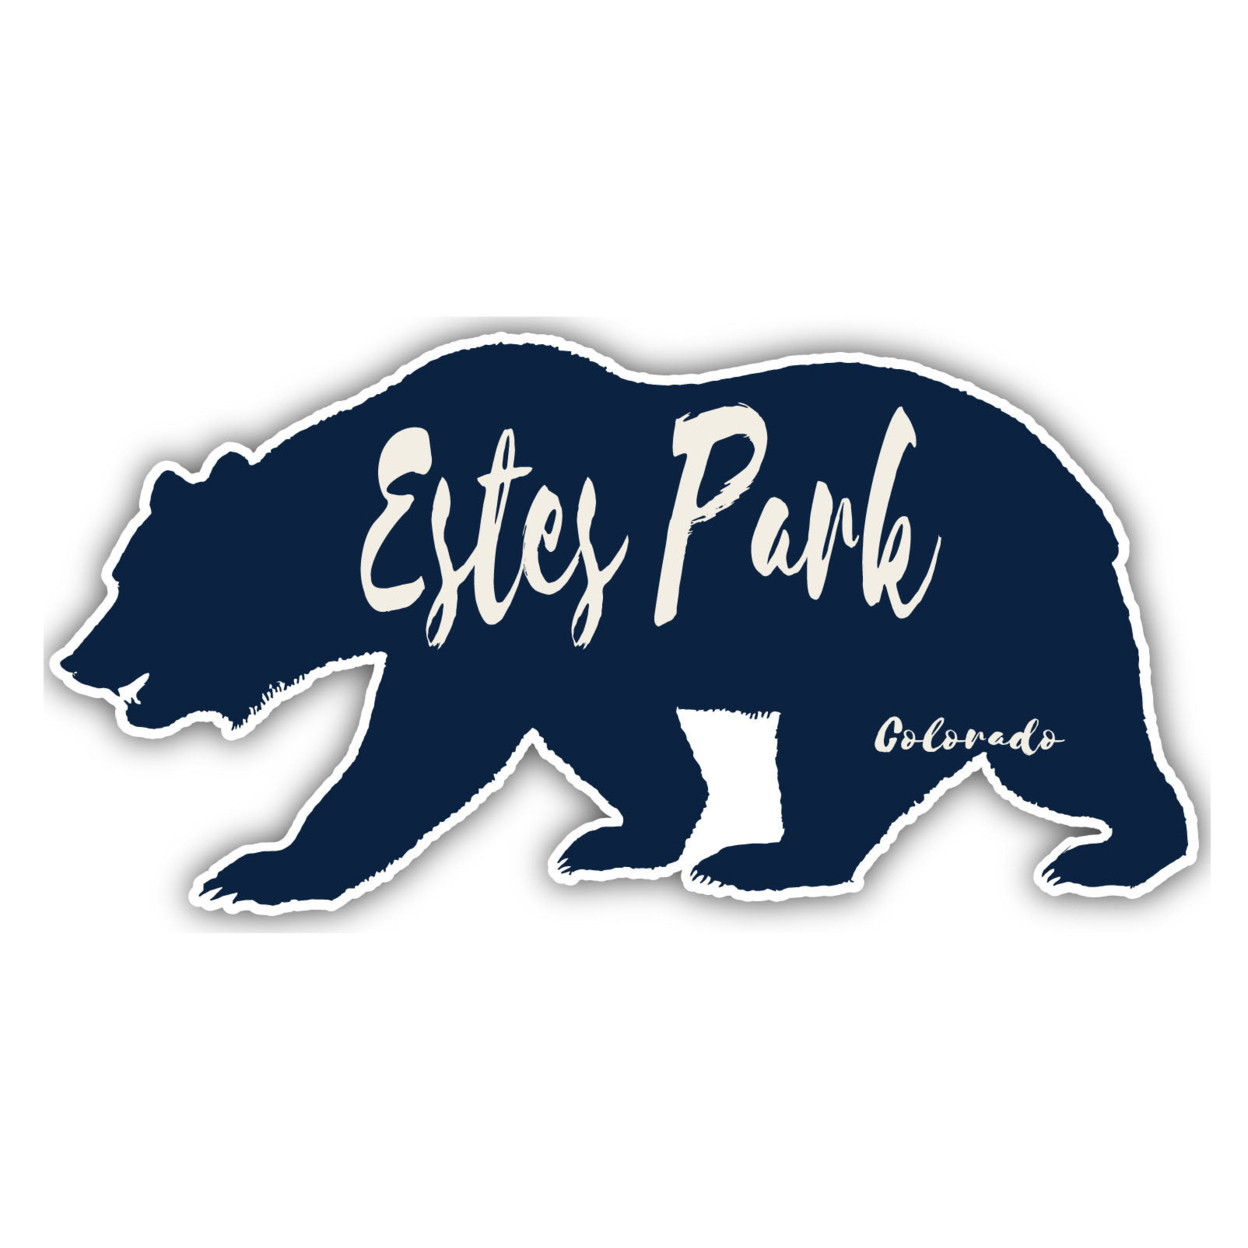 Estes Park Colorado Souvenir Decorative Stickers (Choose Theme And Size) - 4-Pack, 8-Inch, Bear